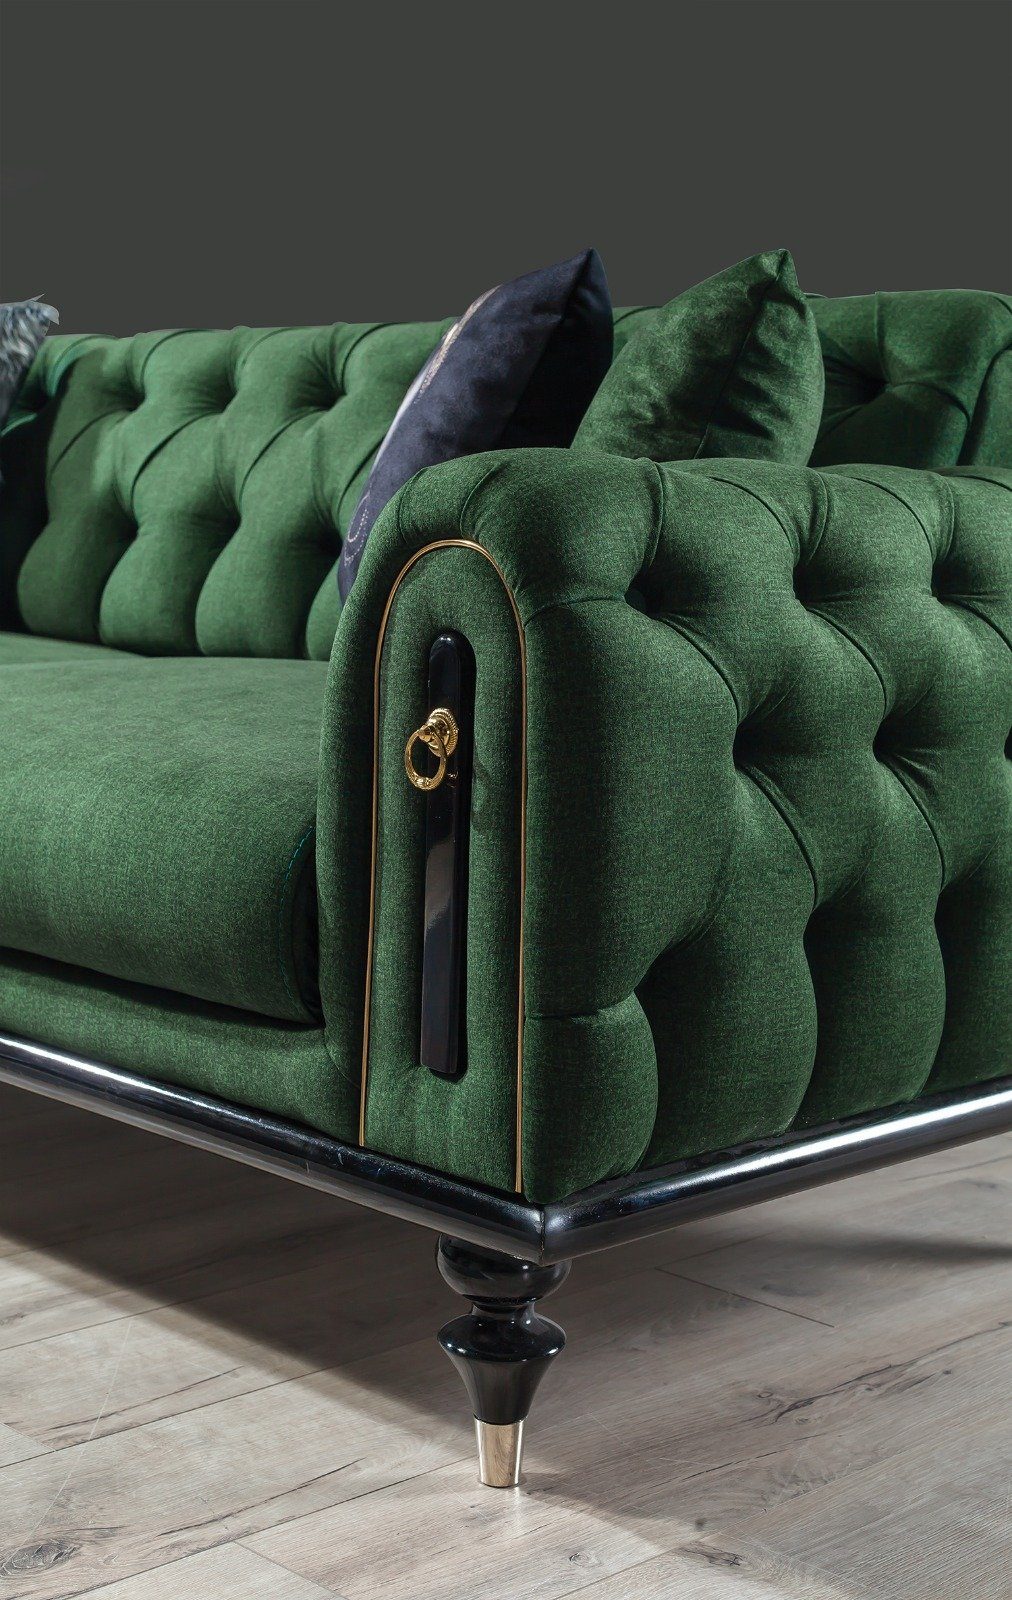 1 Villa Quality Möbel Polyester) (100% Stk. in 2-Sitzer, Pablo, Turkey, Grün Made Sofa Luxus-Microfaser